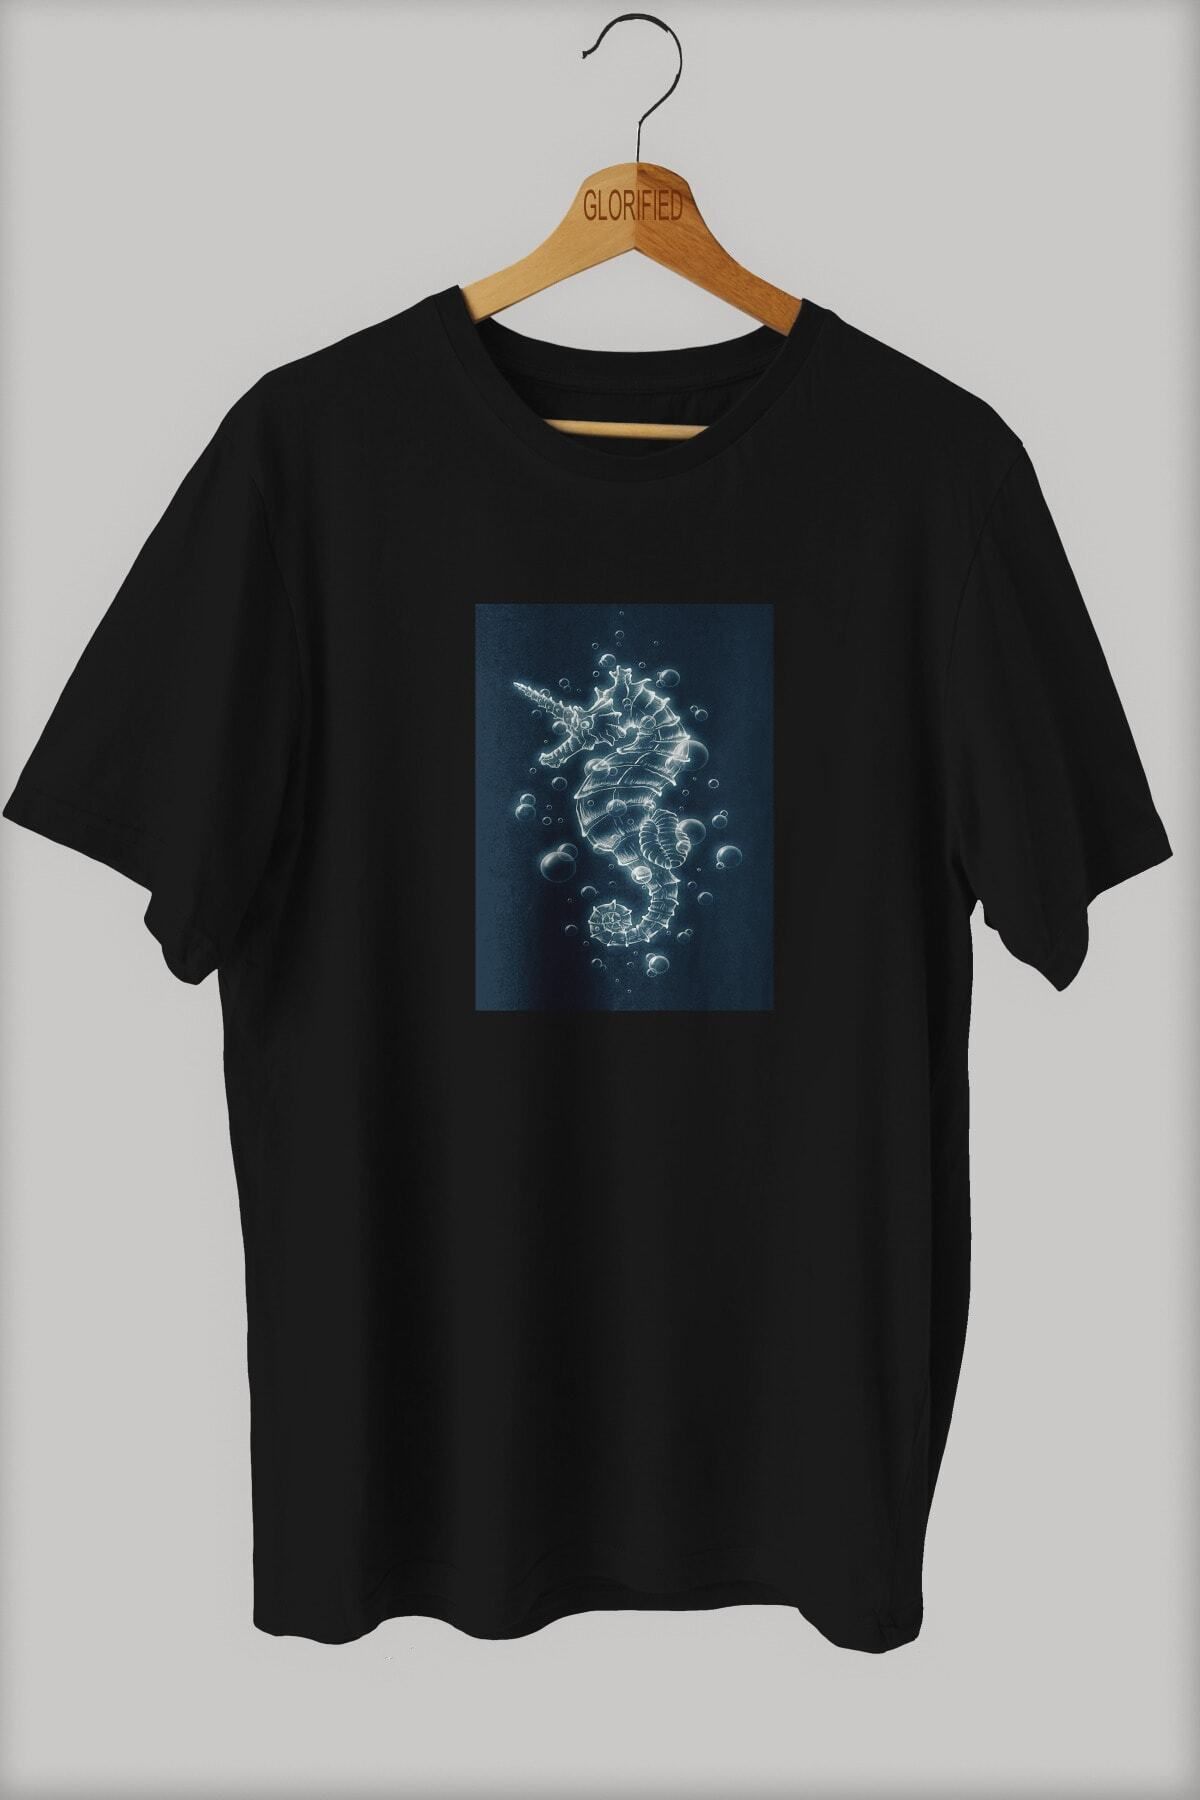 CB MAN COLLECTİON Deniz Atı Tasarım Baskılı Oversize T-shirt ( Tişört ) %100 Cotton